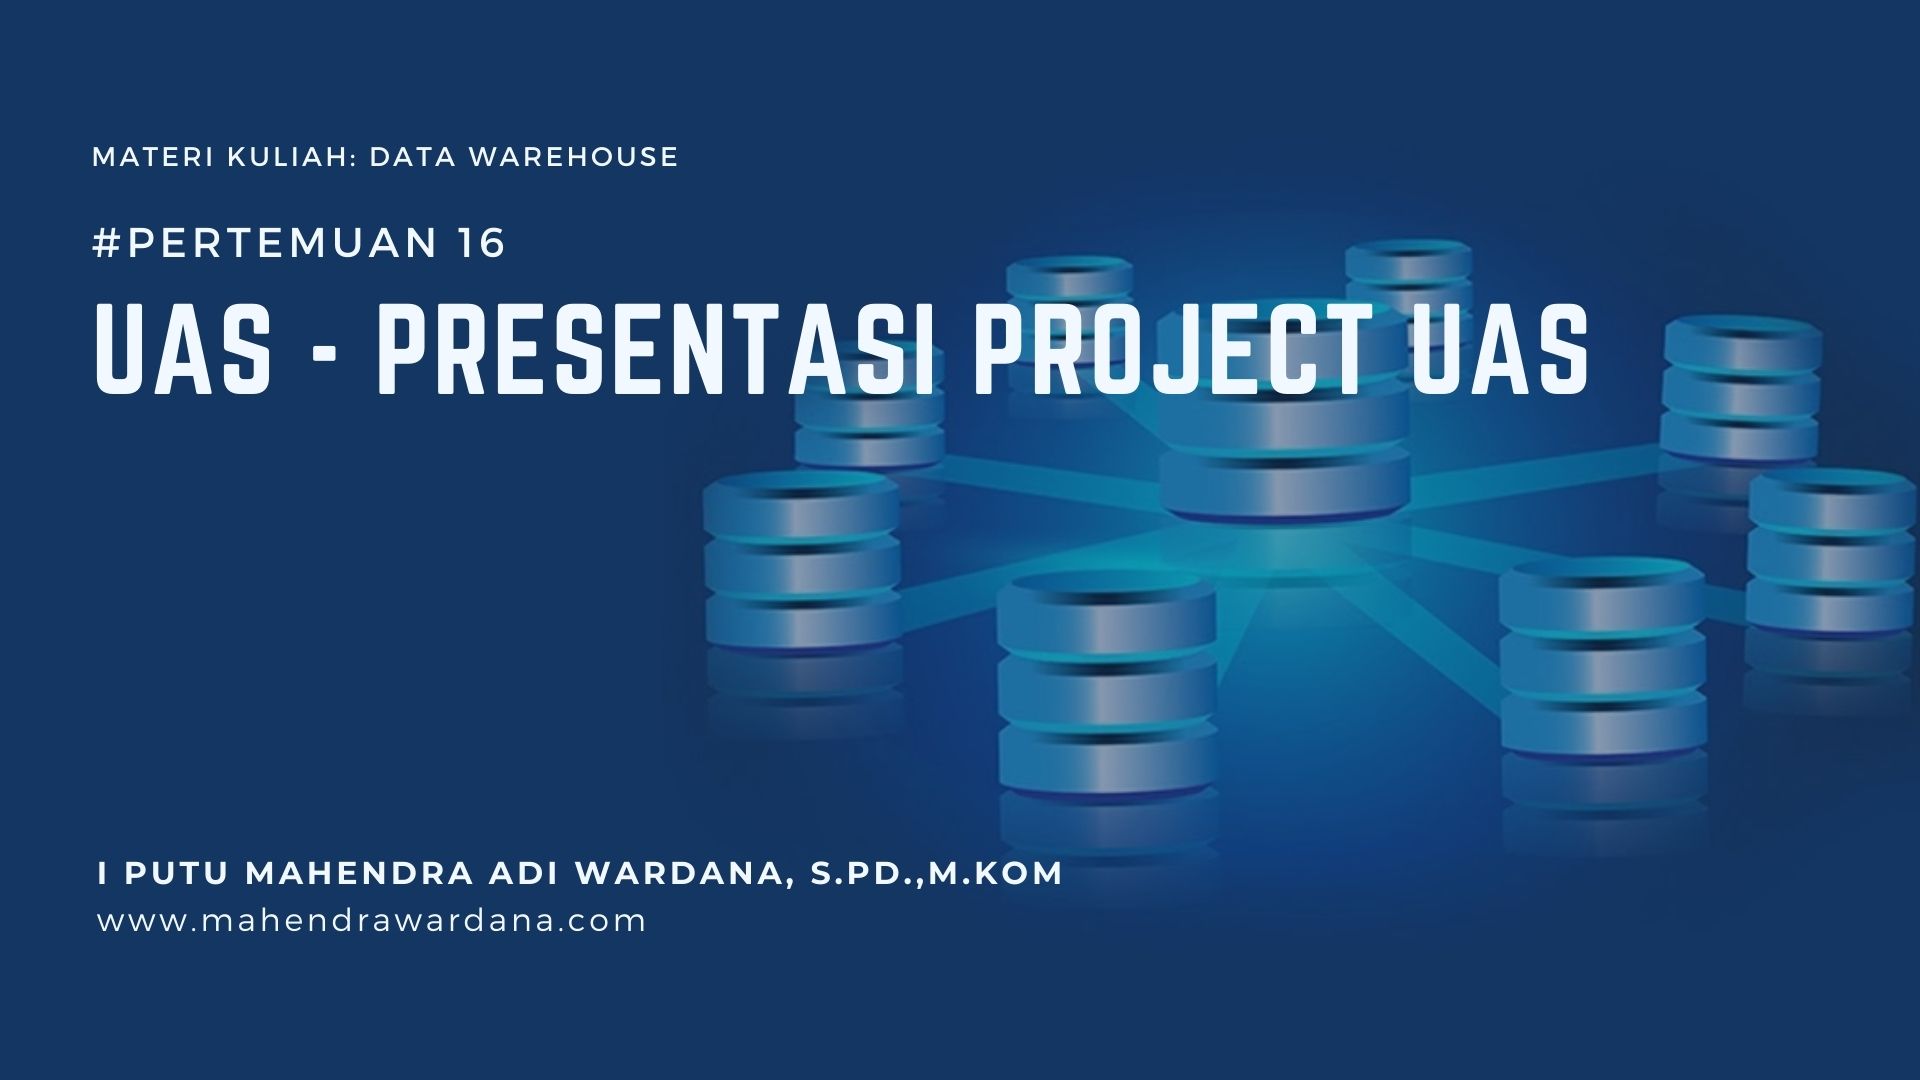 Pertemuan 16 - UAS - Presentasi Project UAS